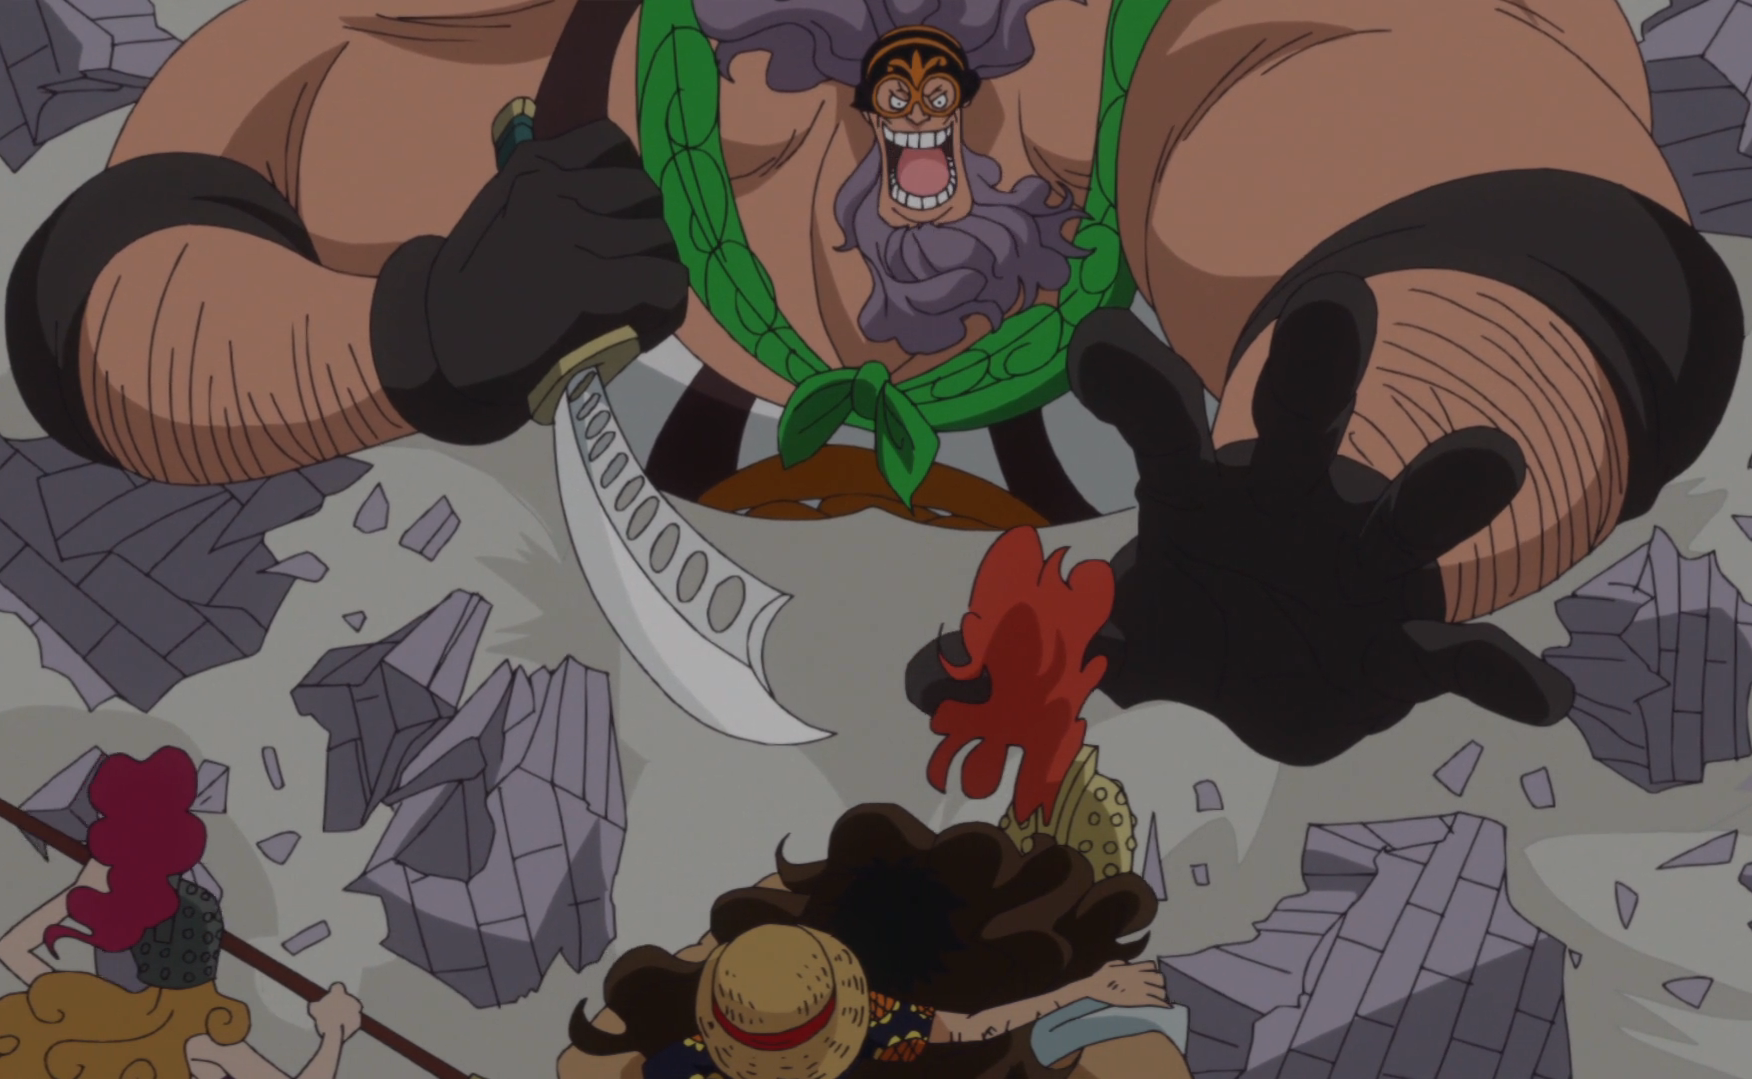 Os 6 piratas mais fortes de One Piece